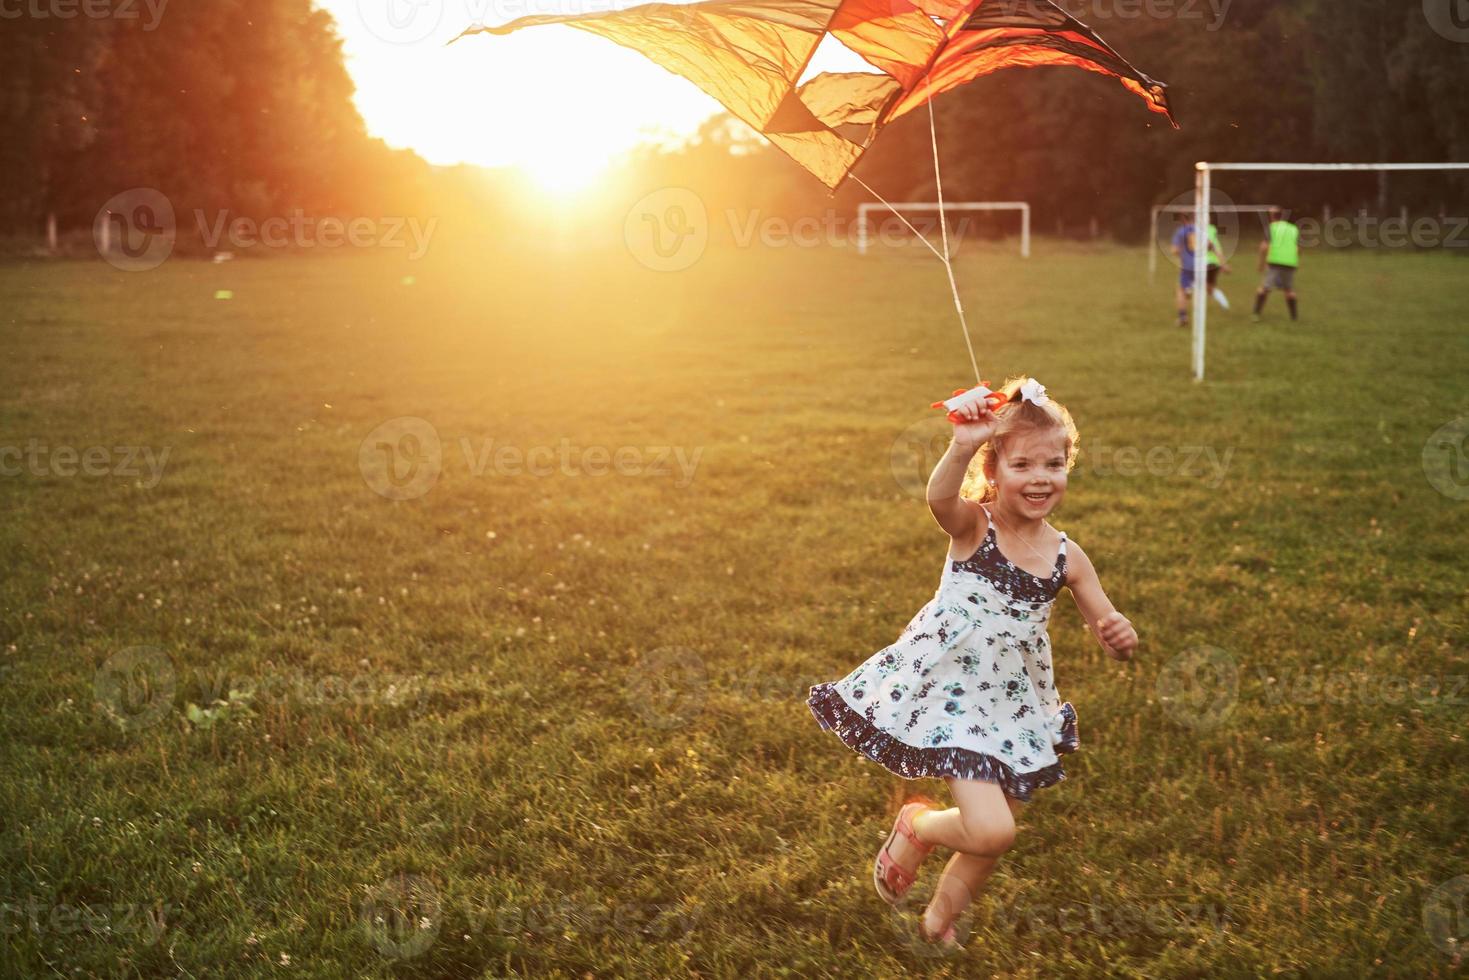 jolie petite fille aux cheveux longs courant avec un cerf-volant sur le terrain par une journée ensoleillée d'été photo